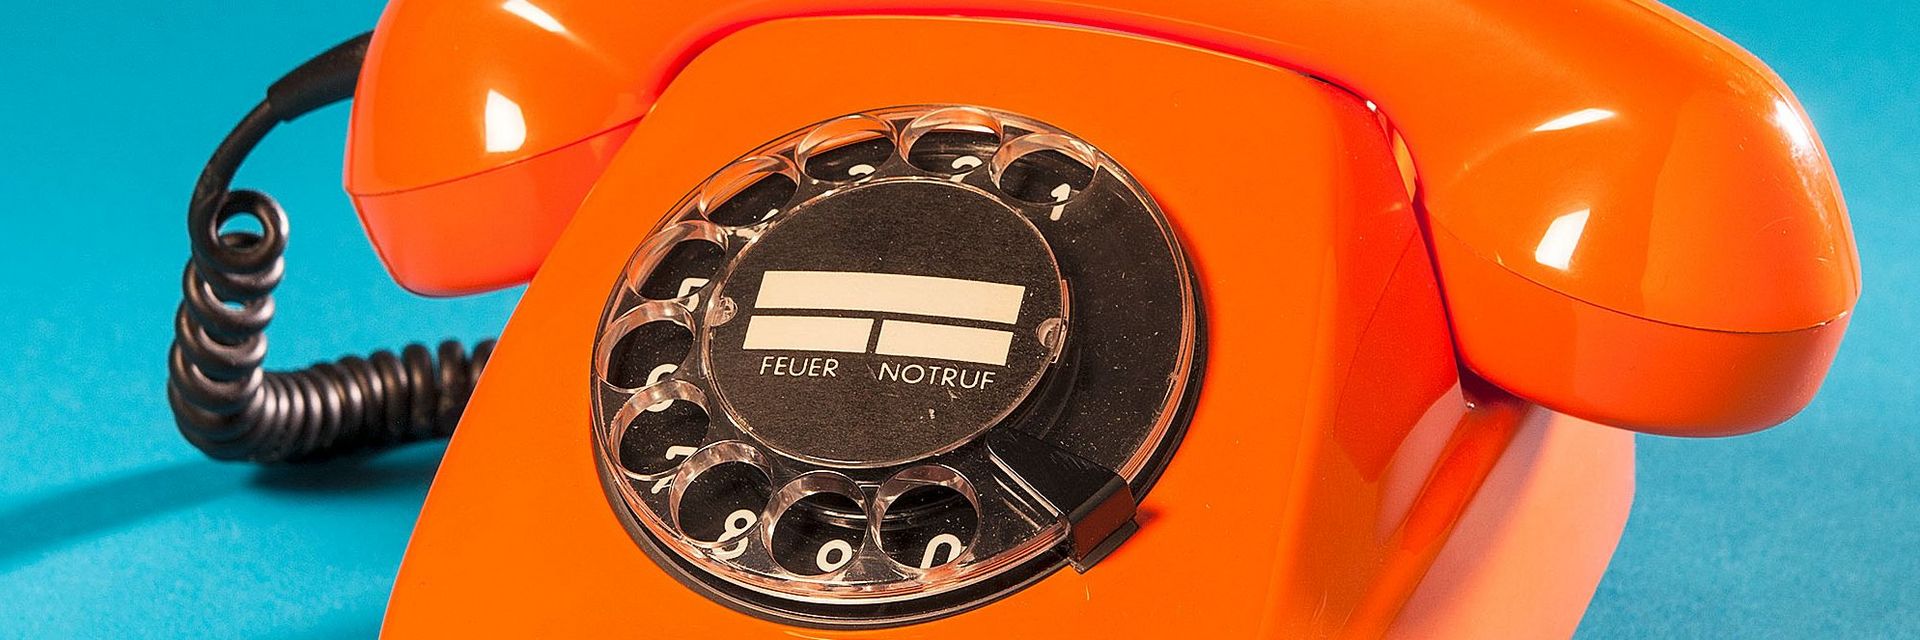 Orangenes, schnurgebundenes Telefon mit schwarzer Wählscheibe.